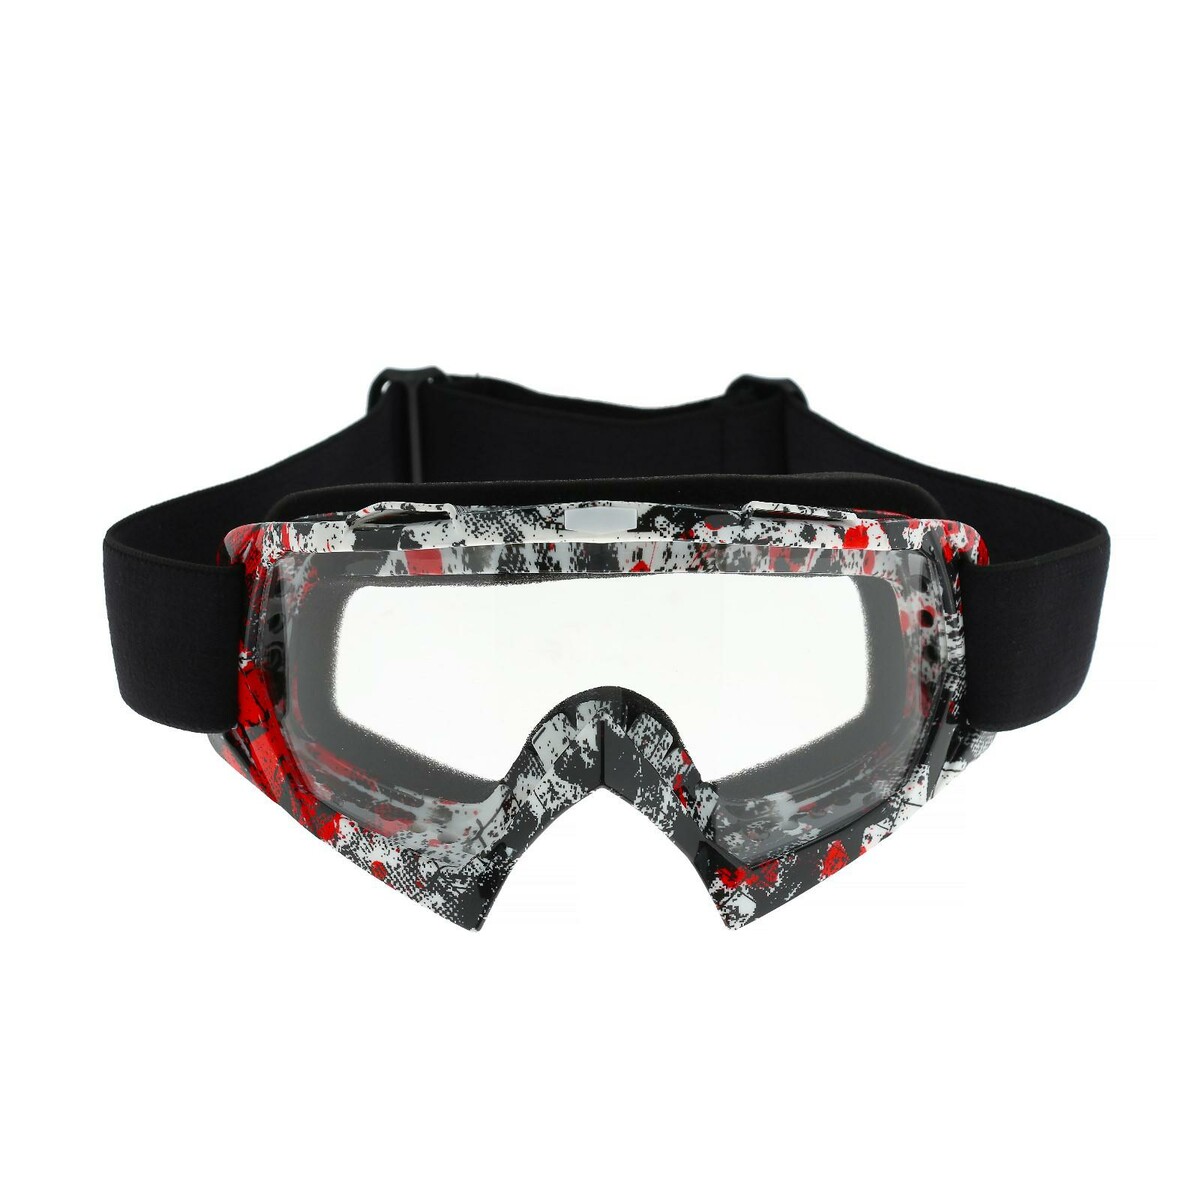 Очки-маска для езды на мототехнике, стекло прозрачное, цвет красный-черный, ом-21 маска для плавания salvas phoenix mask ca520s2rysth серебро красный